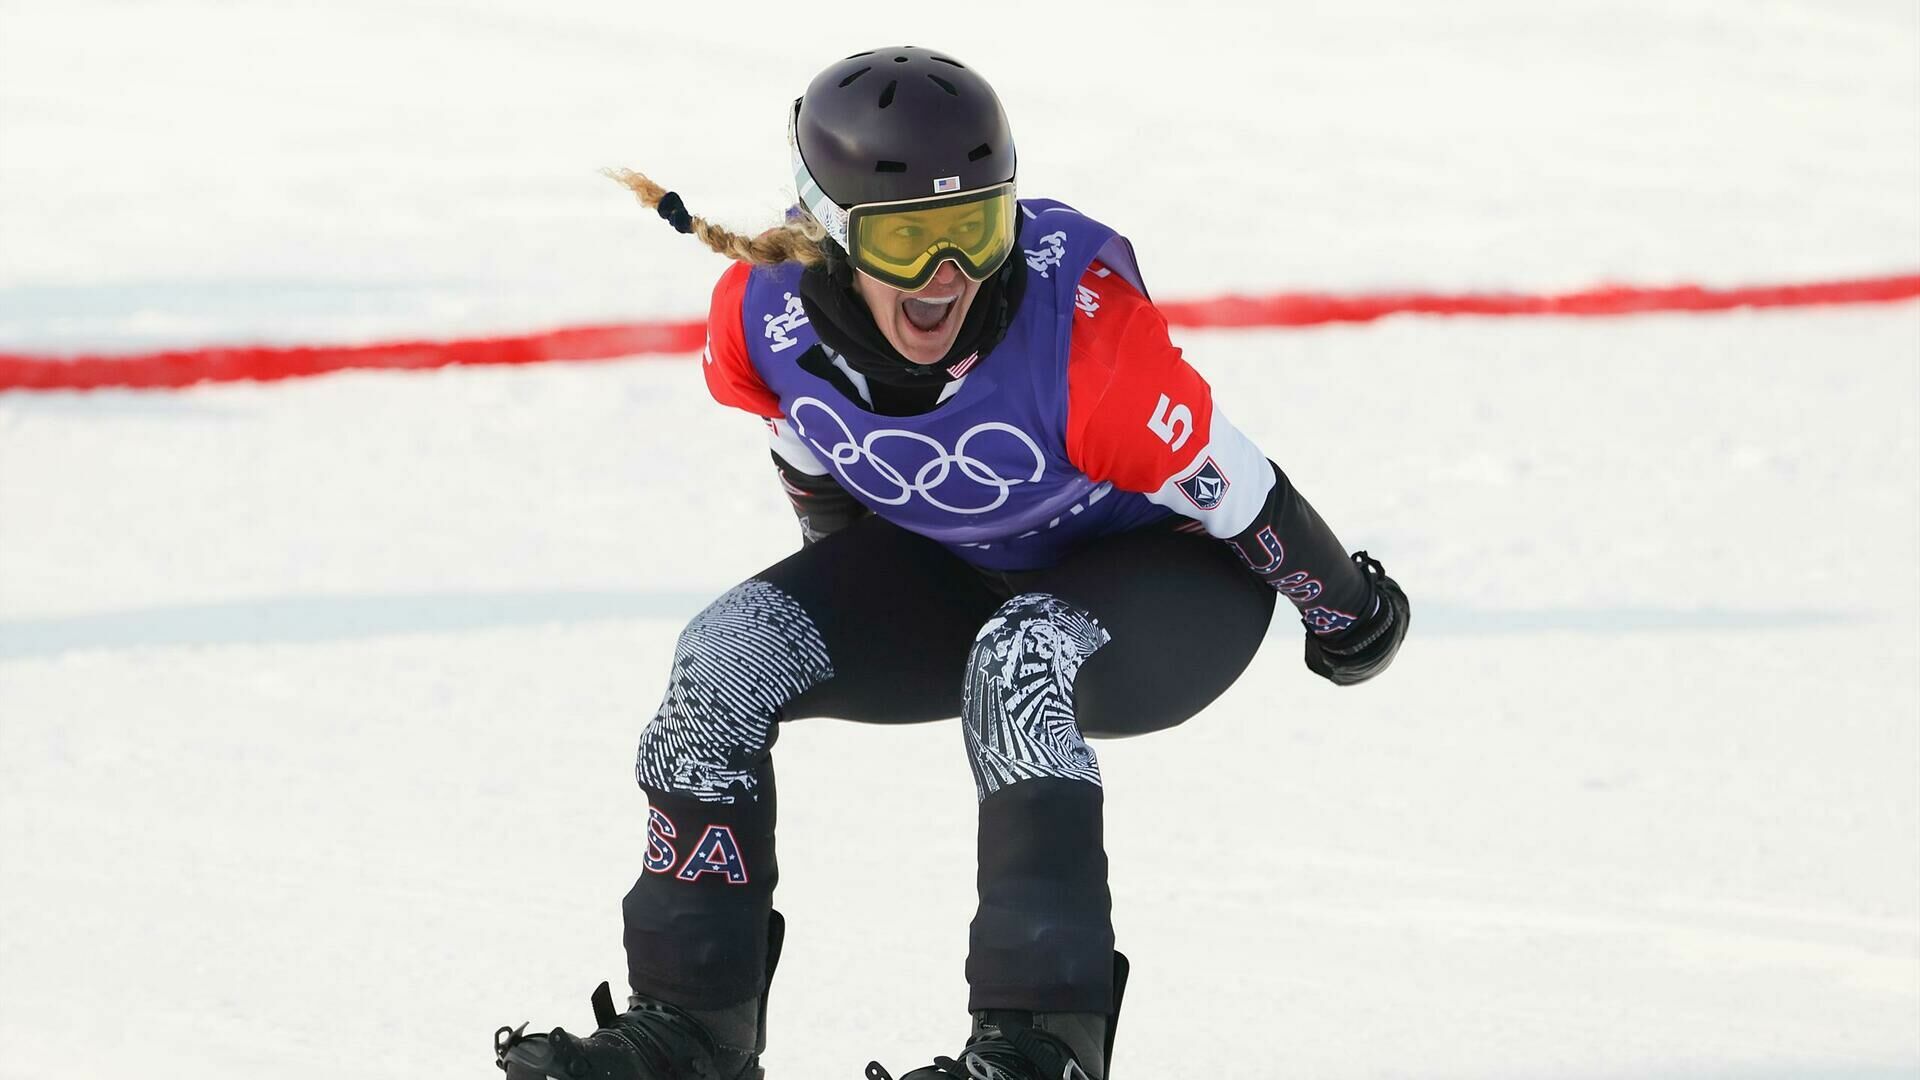 Американка Линдси Джейкобелис взяла олимпийское золото в сноуборд-кроссе